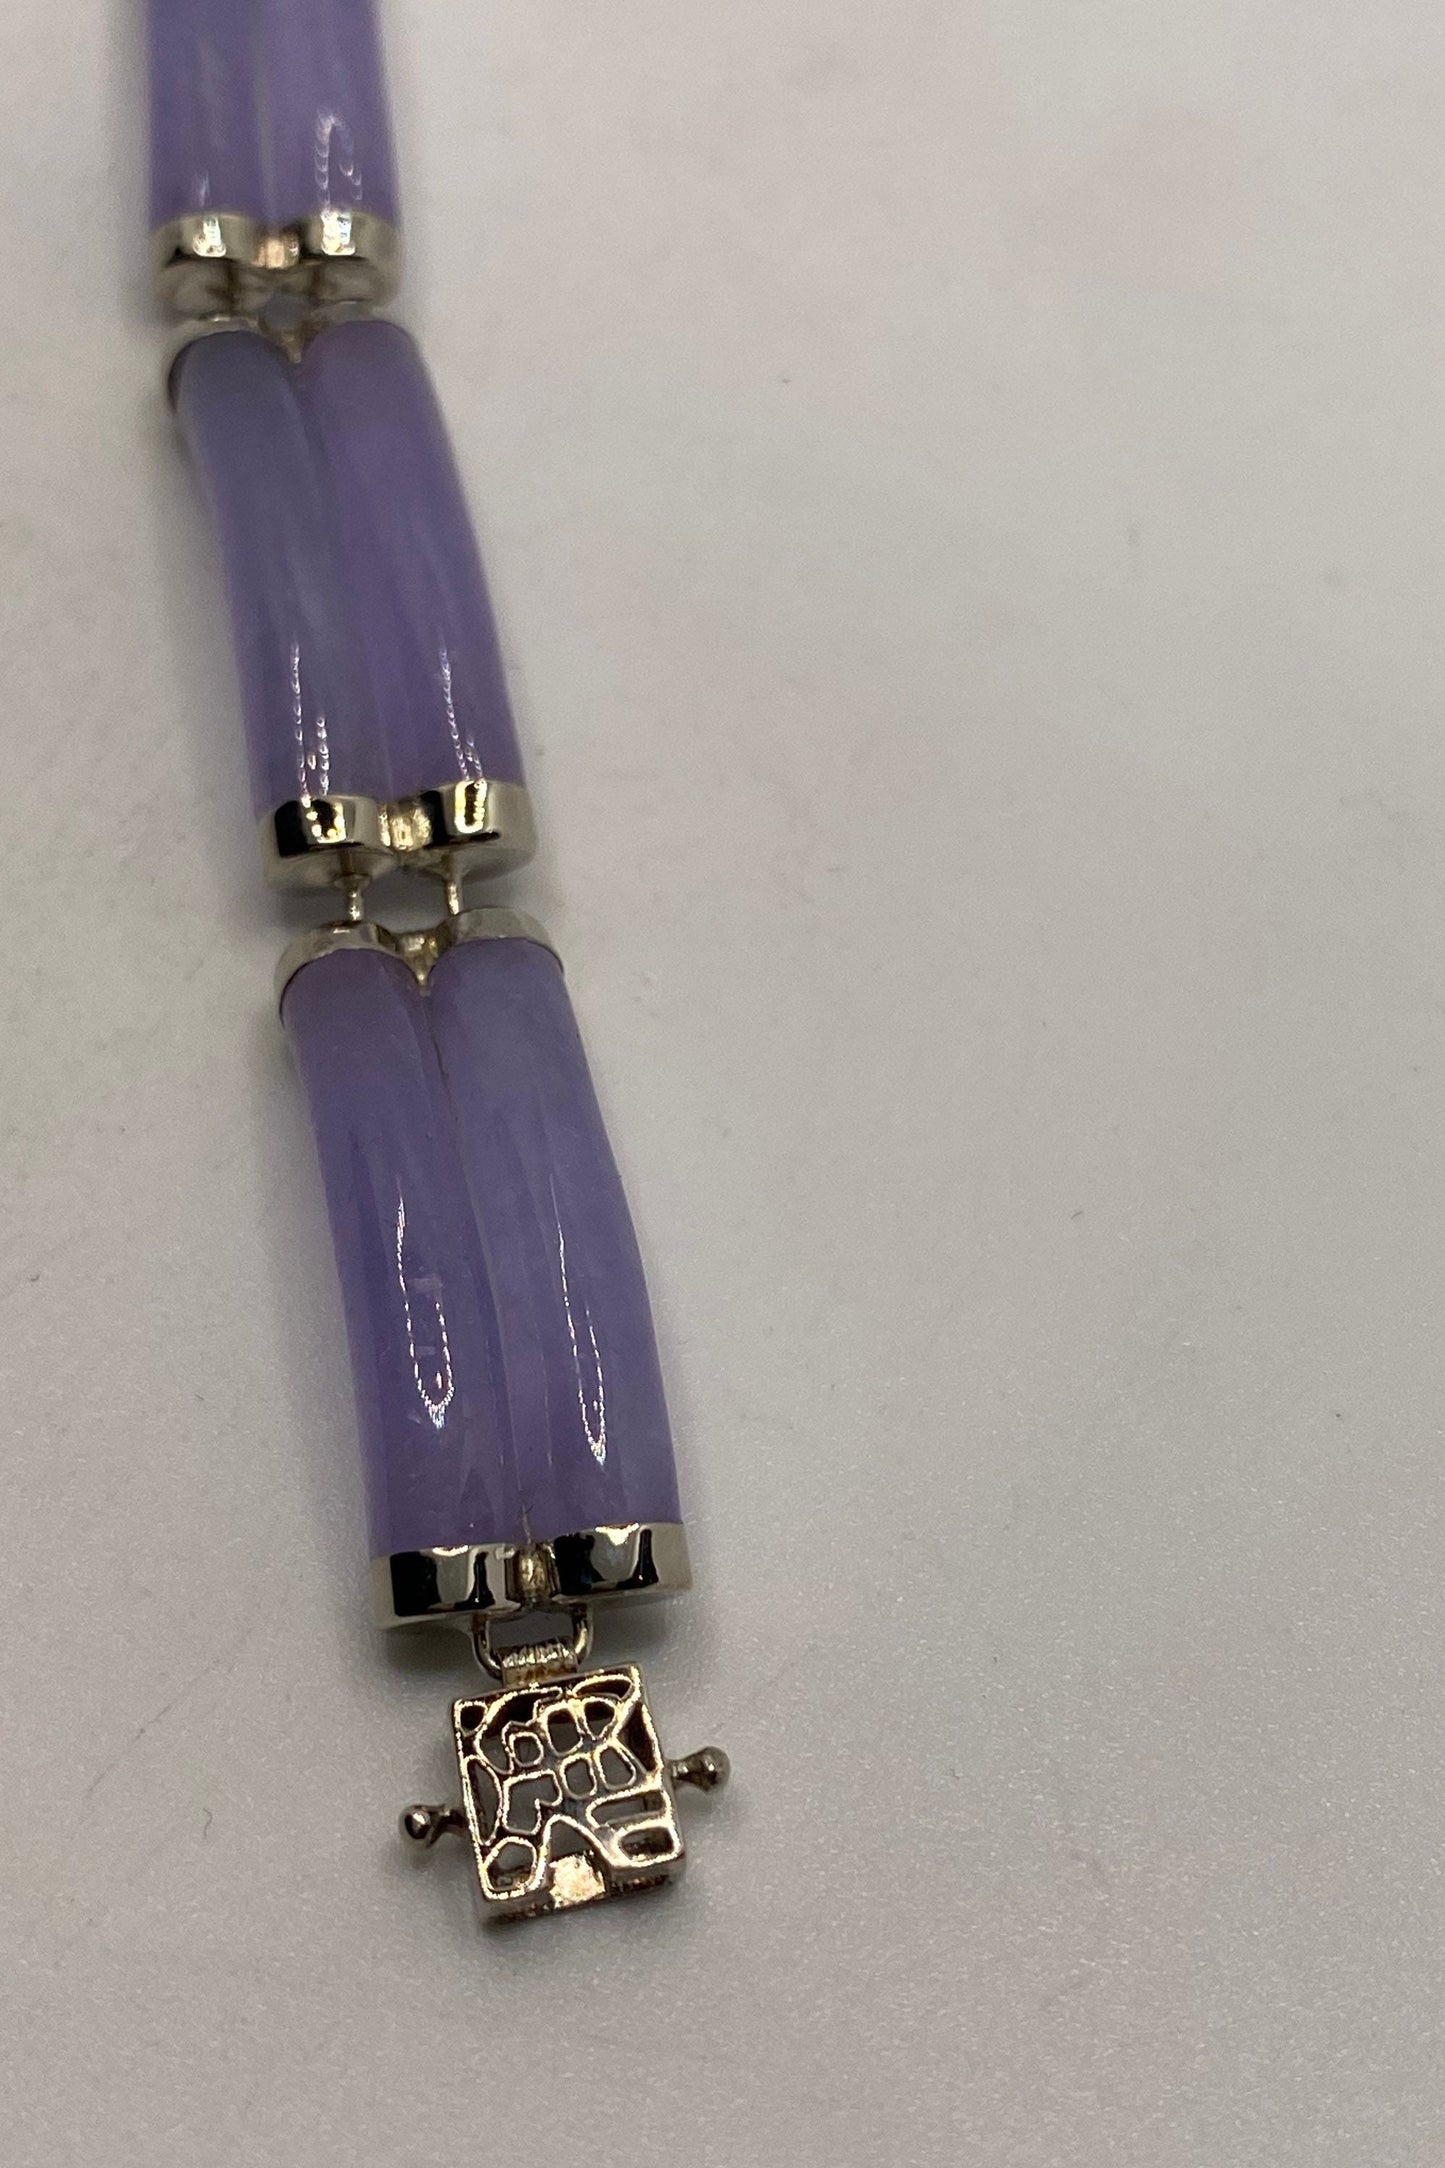 Vintage Purple Jade Tennis Bracelet in 925 Sterling Silver